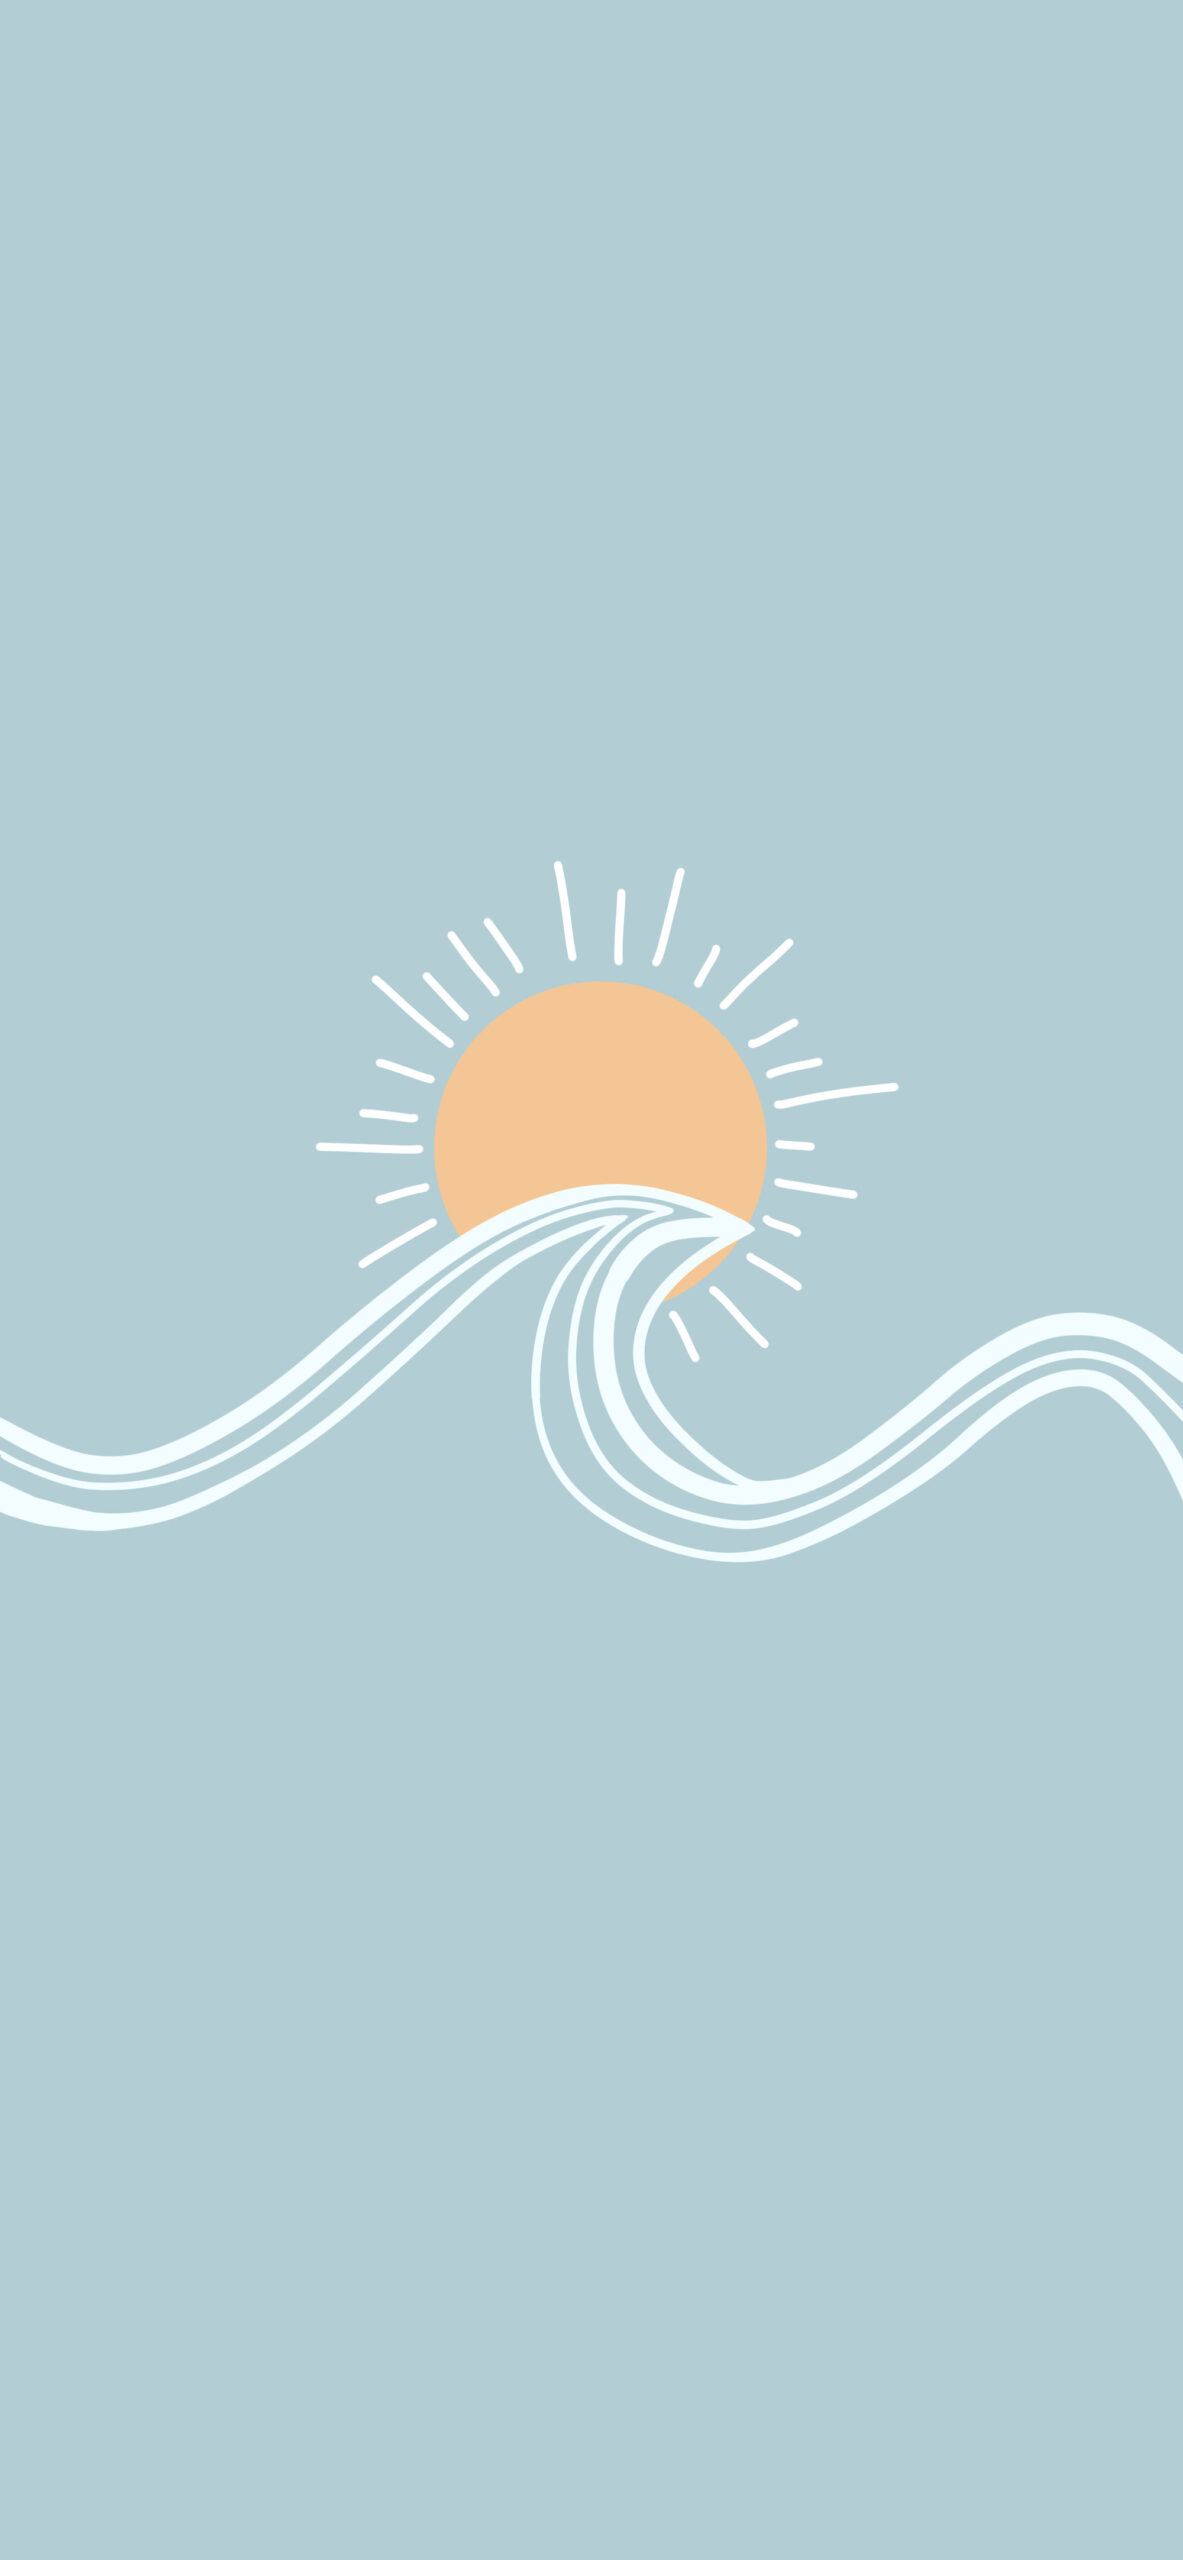  Menschen Hintergrundbild 1183x2560. Sun and Wave Blue Wallpaper Aesthetic Wallpaper for iPhone